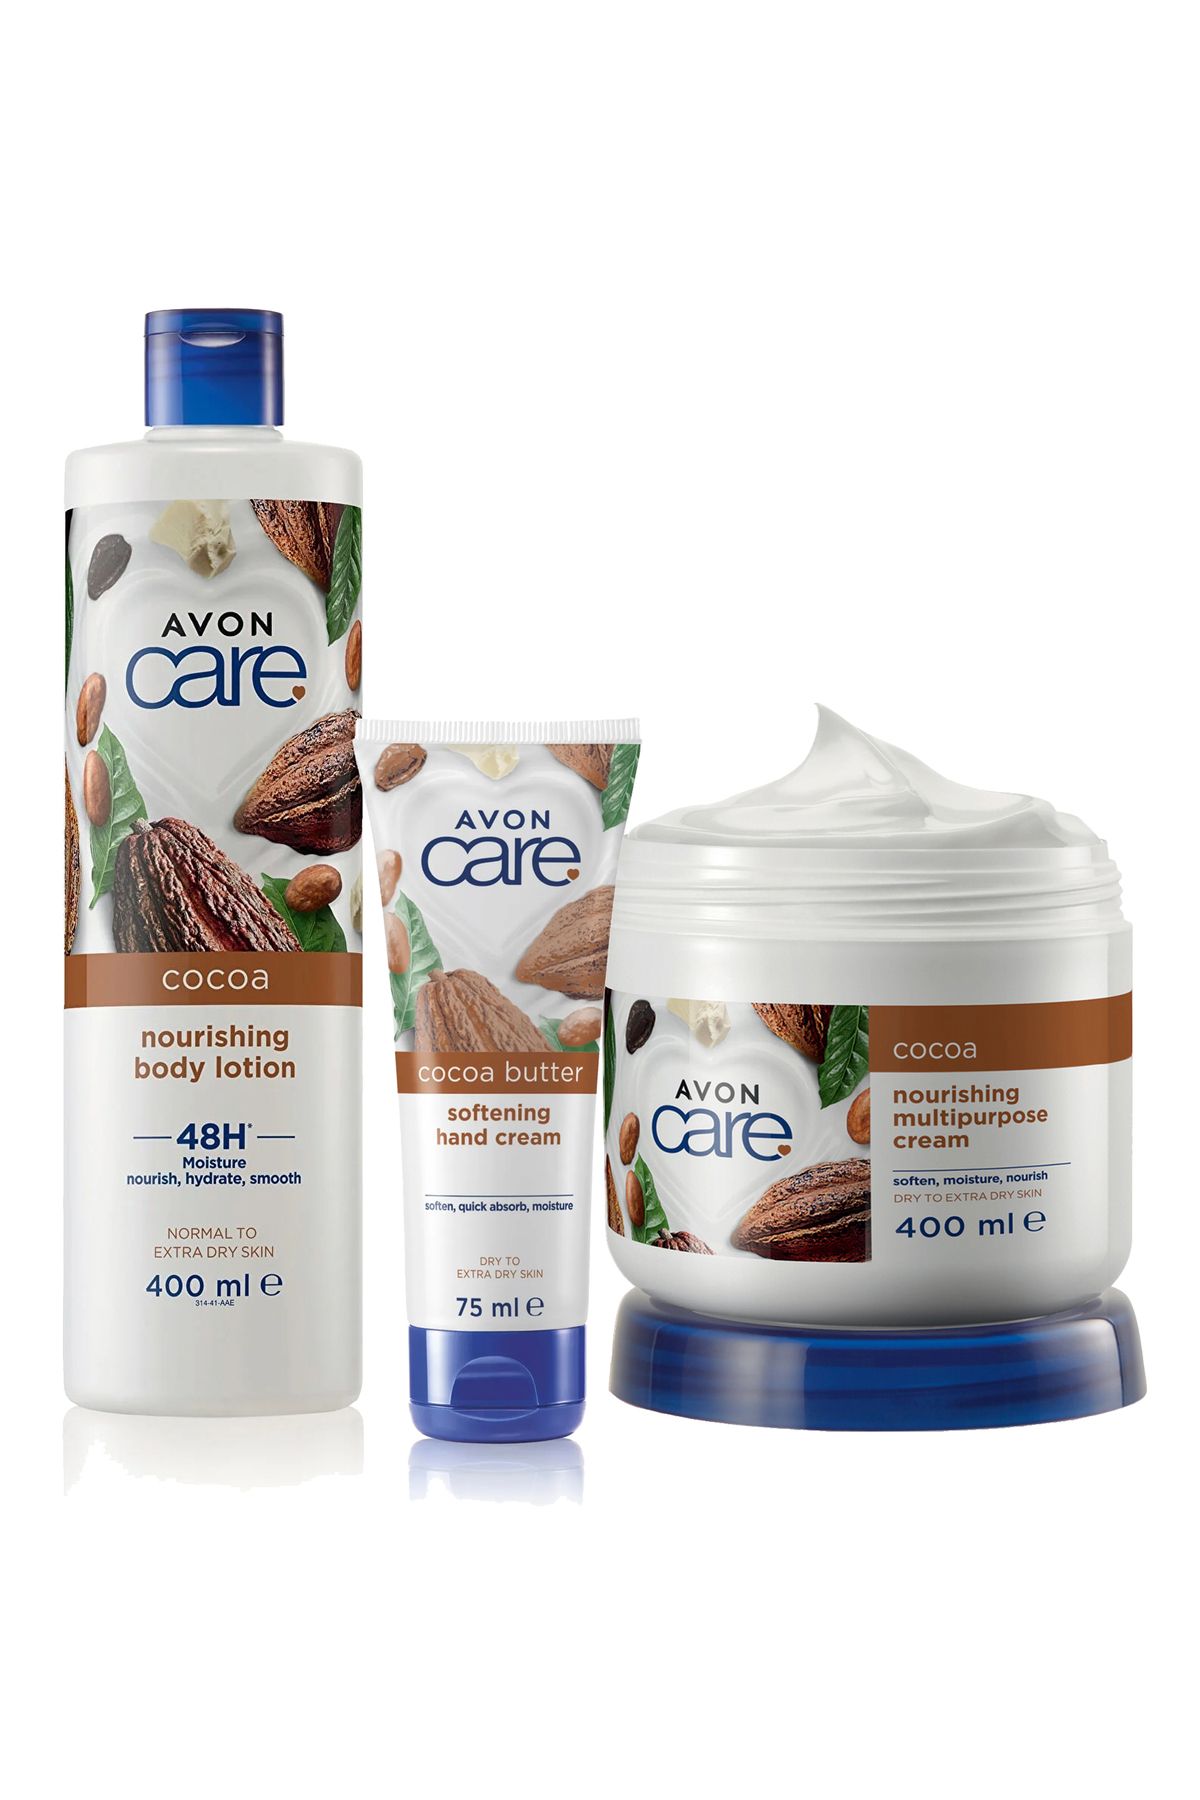 Avon Care Kakao Yağı İçeren E Vitaminli Çok Amaçlı Krem Losyon ve Kremi Paketi